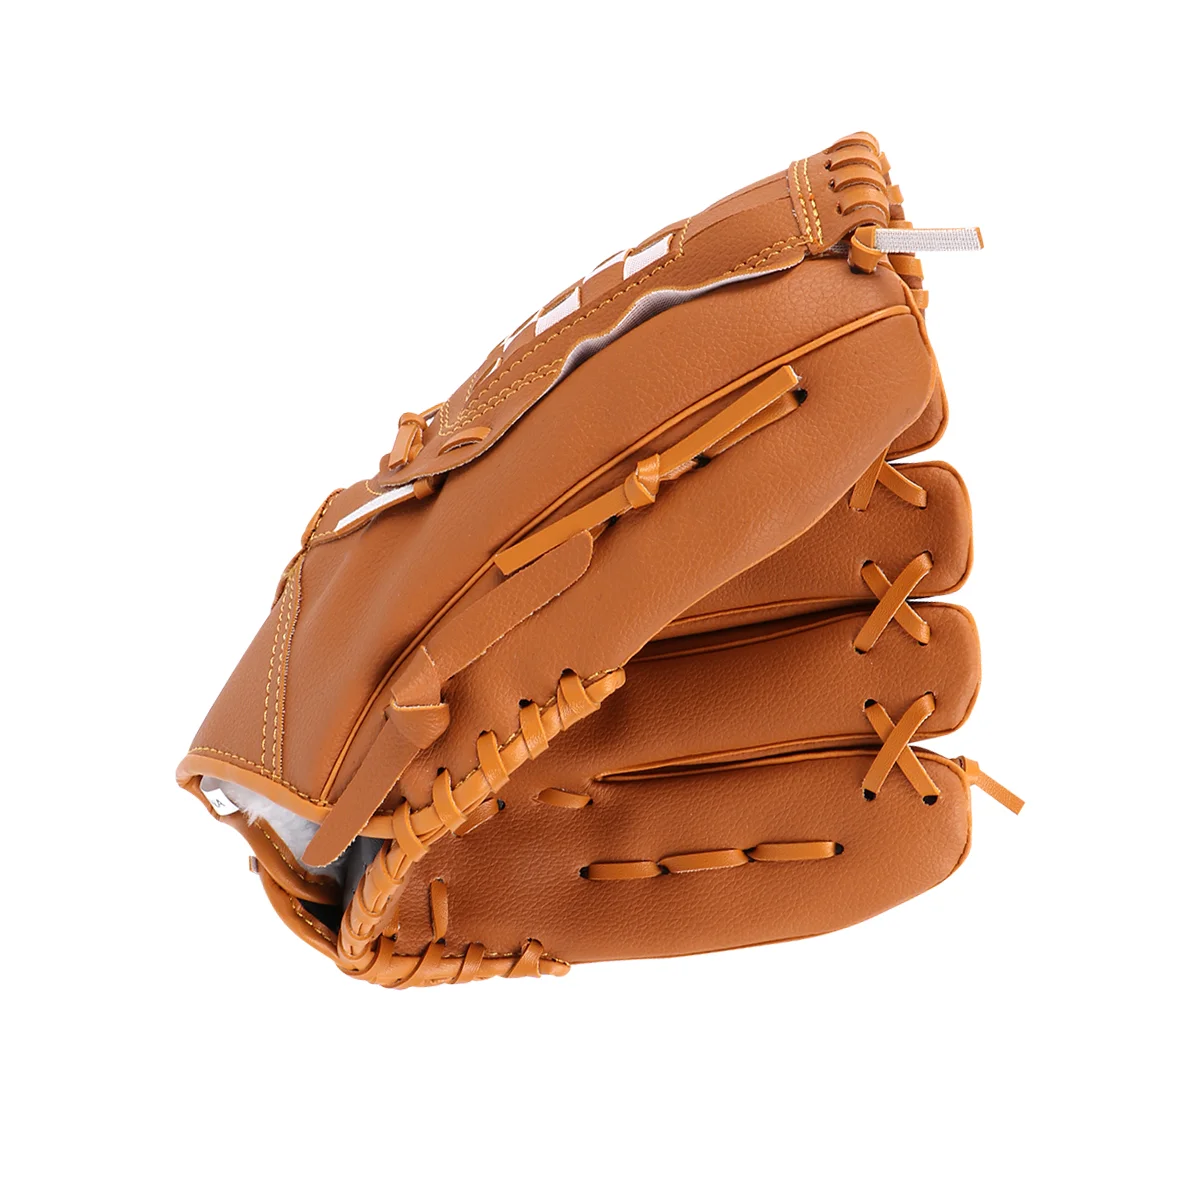 

12,5 дюймовые бейсбольные перчатки для Софтбола для занятий спортом на открытом воздухе (желтые)